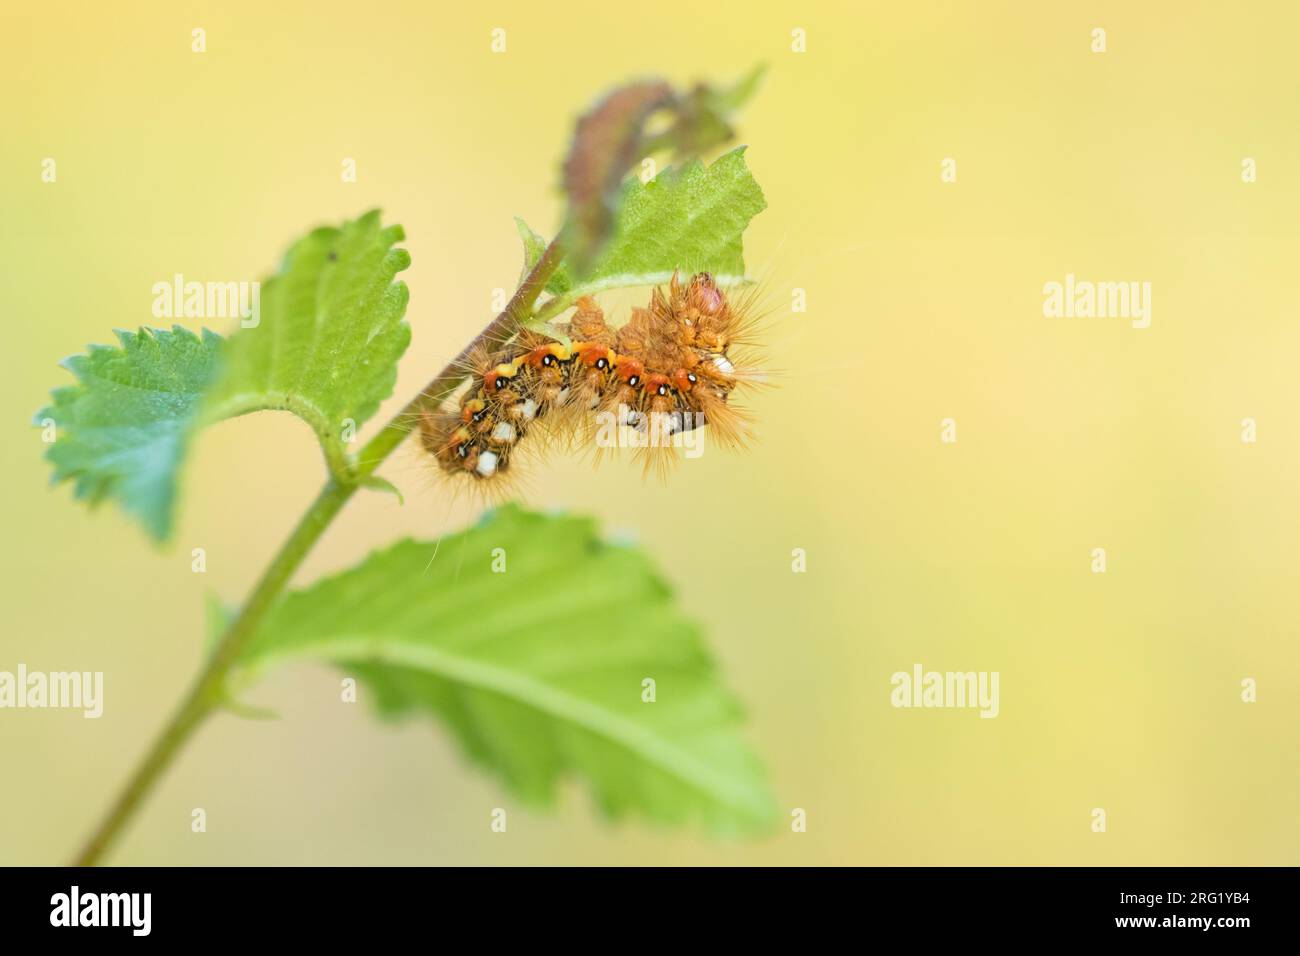 Acronicta rumicis - Polilla de la hierba del nudo - Ampfer-Rindeneule, Alemania (Baden-Württemberg), caterpillar Foto de stock